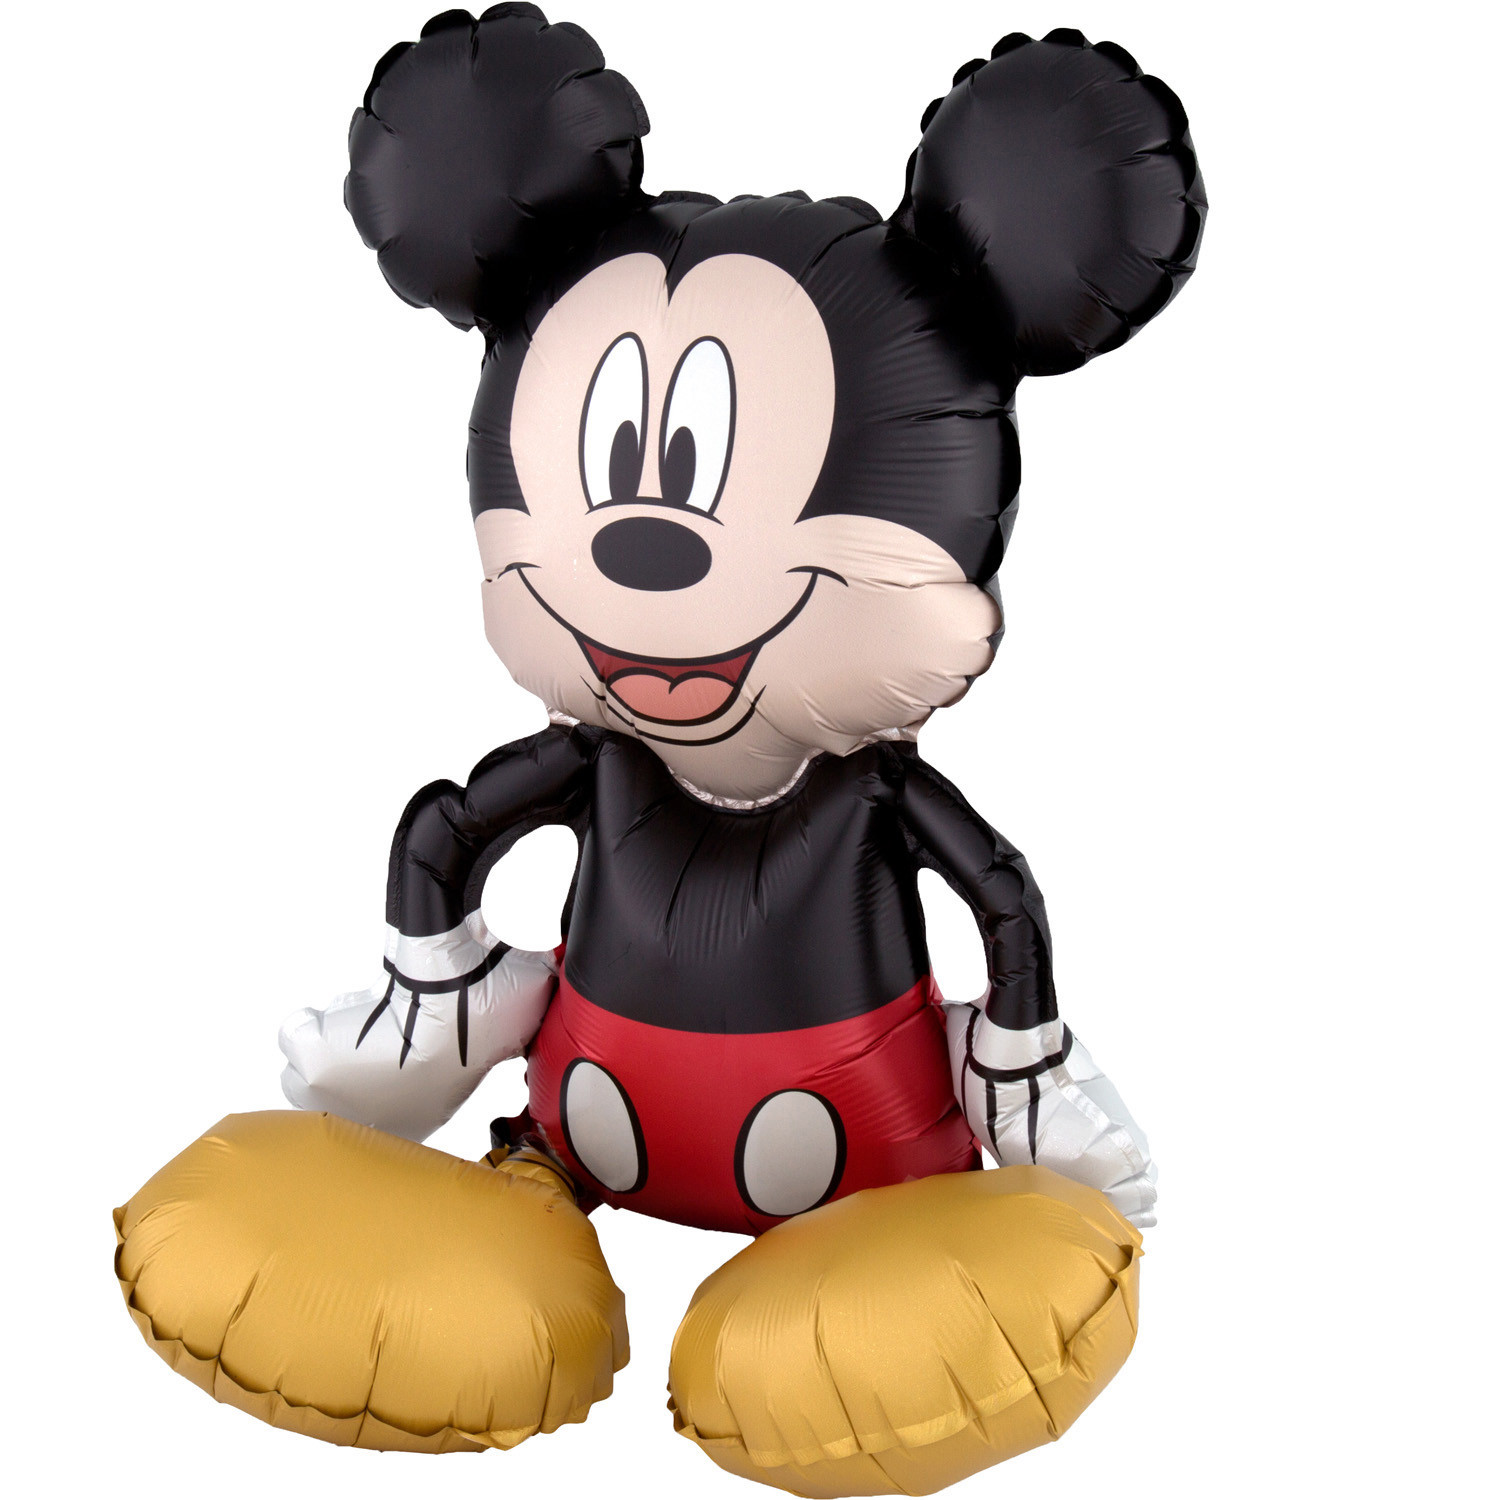 Balon foliowy siedząca "Myszka Mickey" / napełniany powietrzem